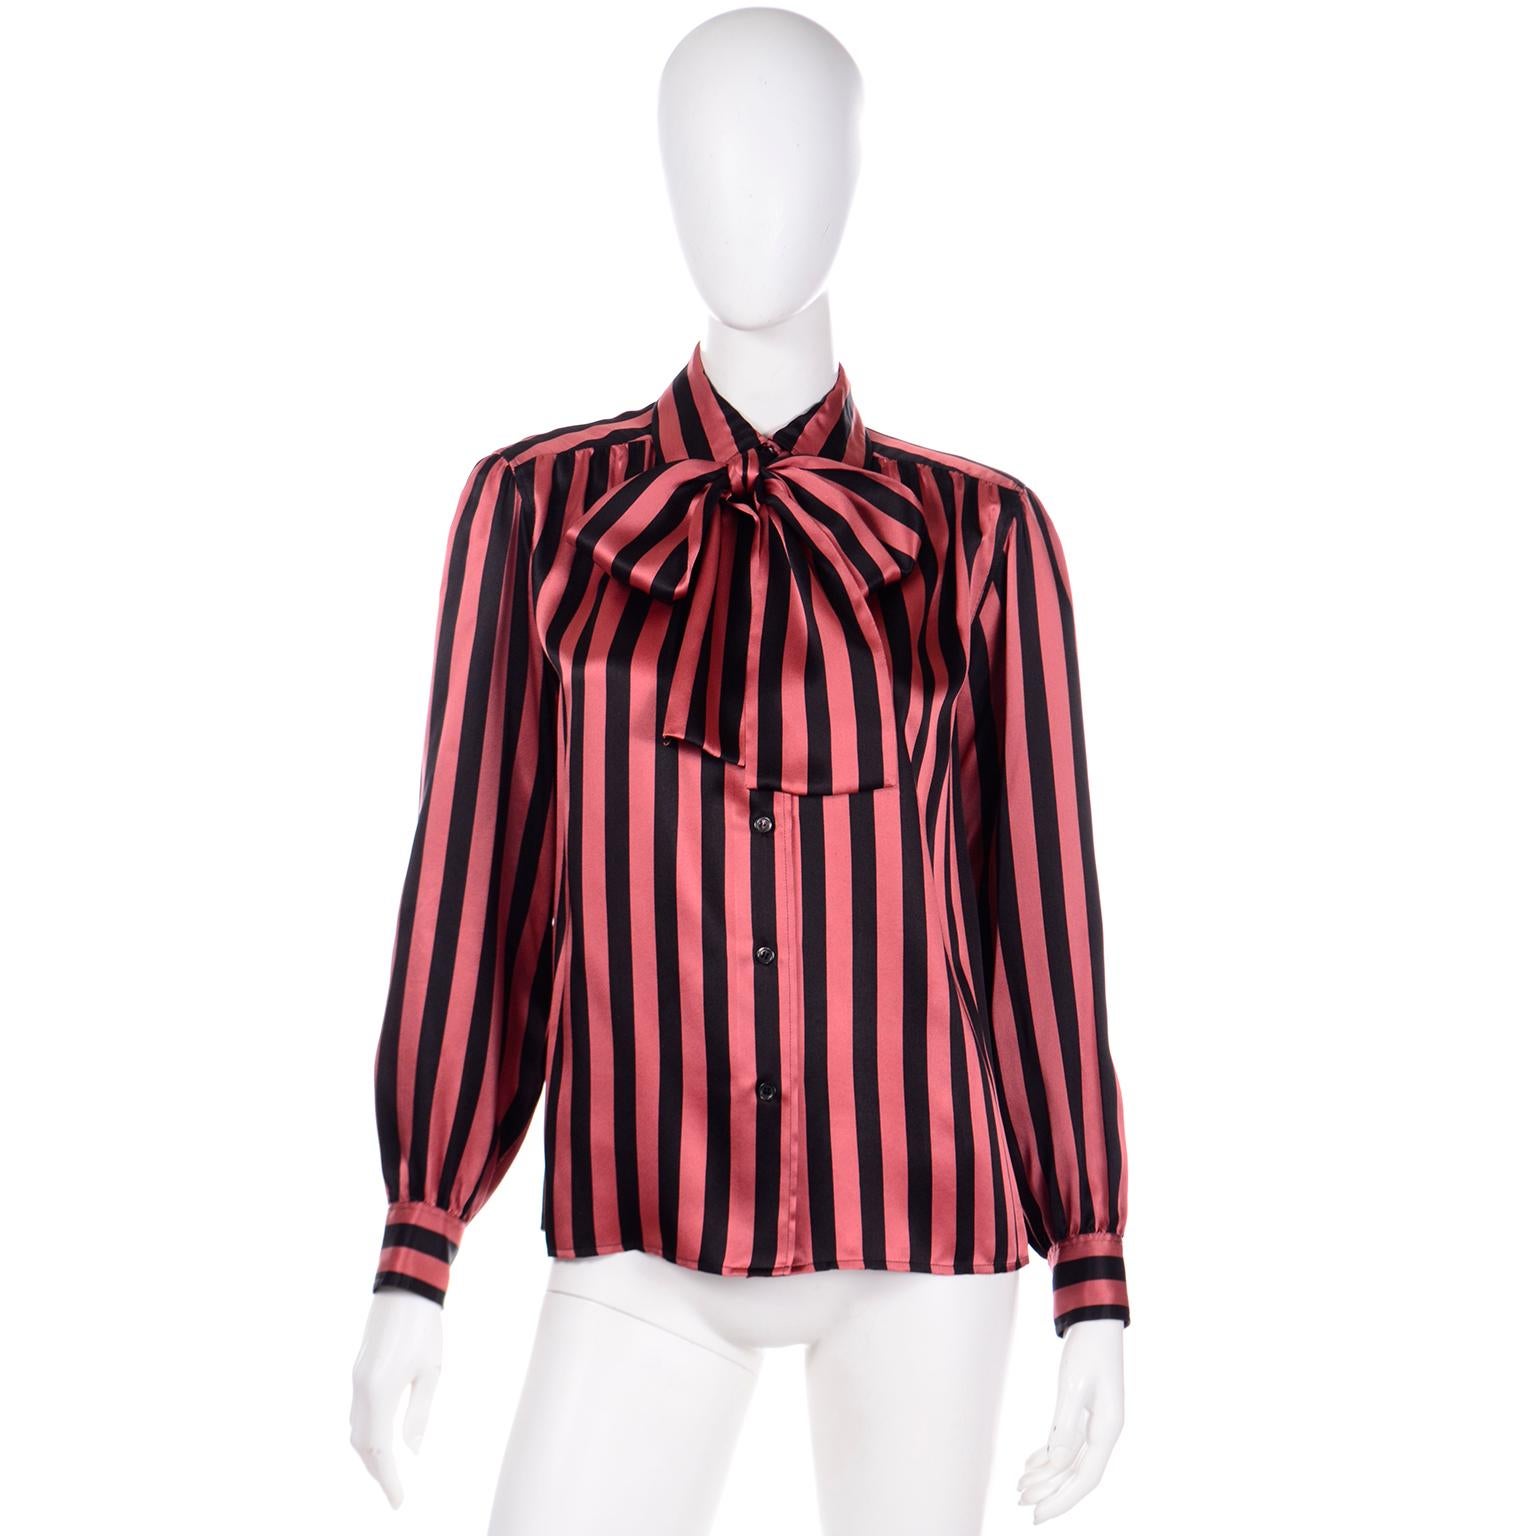 Diese Vintage-Bluse von YSL aus den frühen 1980er Jahren ist aus luxuriöser Seide mit orange-schwarzem Streifendruck. Yves Saint Laurent war ein produktiver Designer, der bei seinen Stücken auch auf das kleinste Detail achtete. Seine Vintage-Blusen